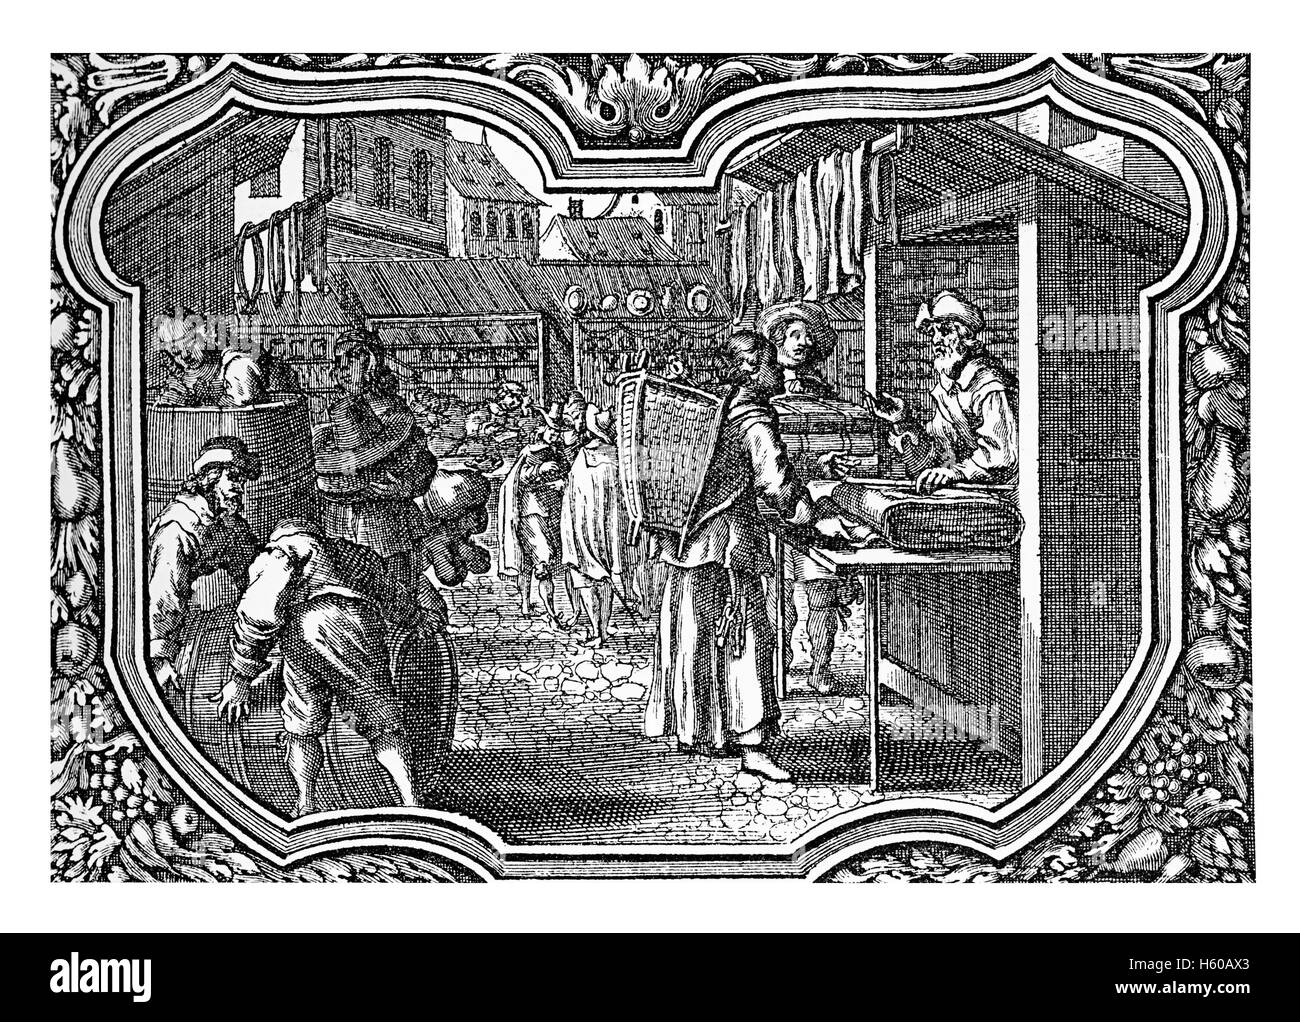 Deutschland, XVII Jahrhundert Stadt mit festlichen Markt, Menschen den Kauf von Nahrungsmitteln, Getränken und Tücher, Gravur verzierte Rahmen anzeigen Stockfoto